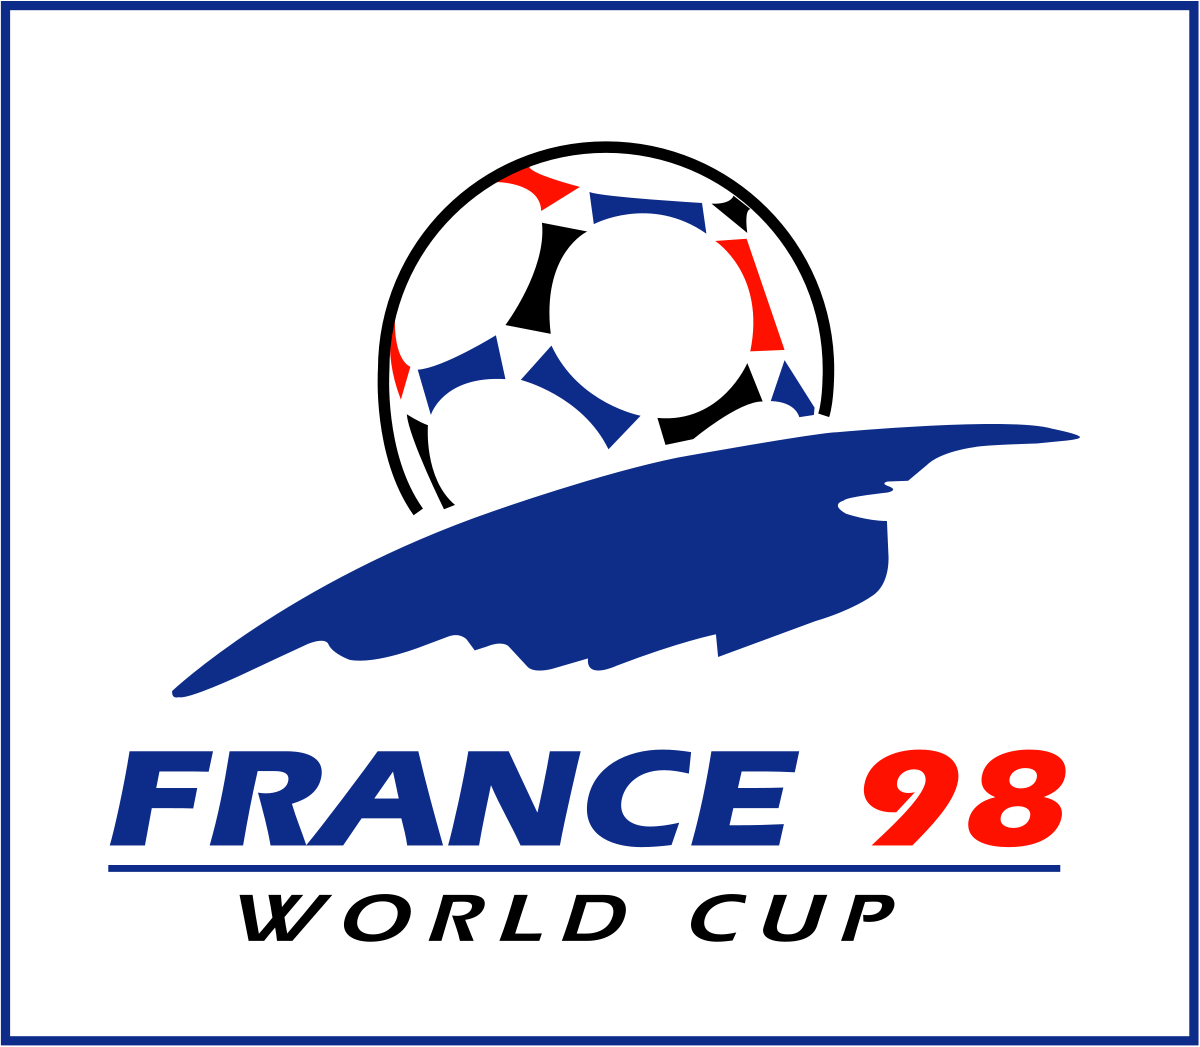 Чемпионат мира-1998 стал последним крупным футбольным форумом ХХ столетия, а его освещение телевидением поднялось на качественно новый уровень и побило все возможные рекорды по количеству привлеченной